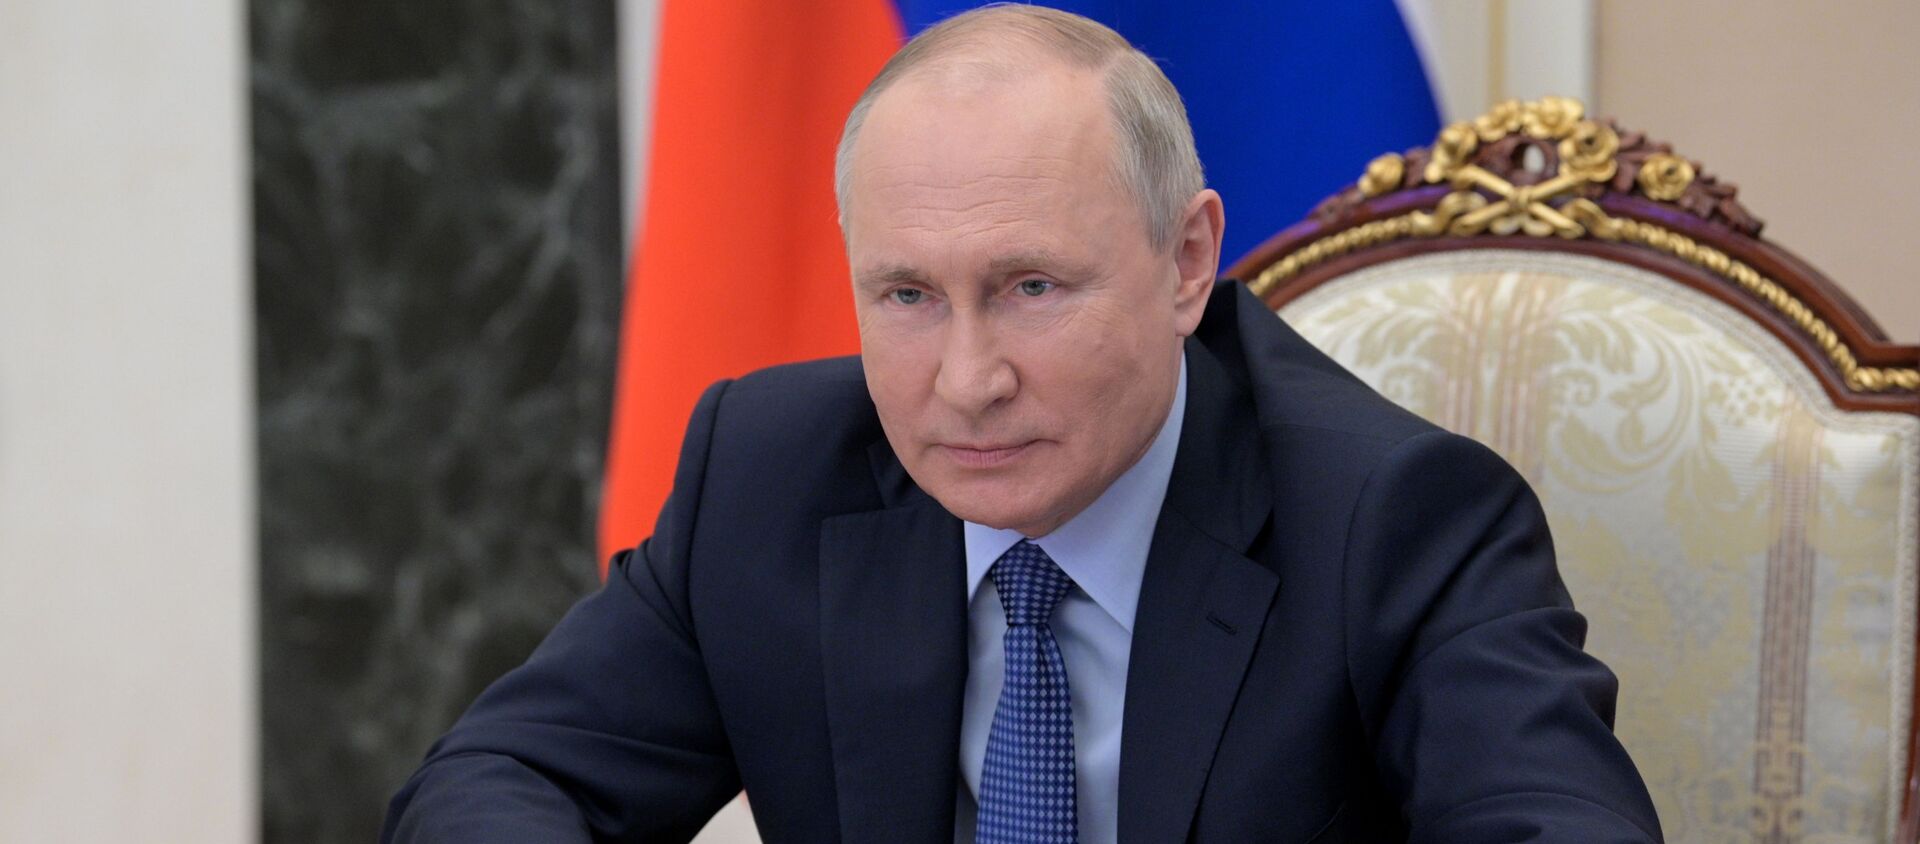  Президент России Владимир Путин. Архивное фото  - Sputnik Южная Осетия, 1920, 22.06.2021